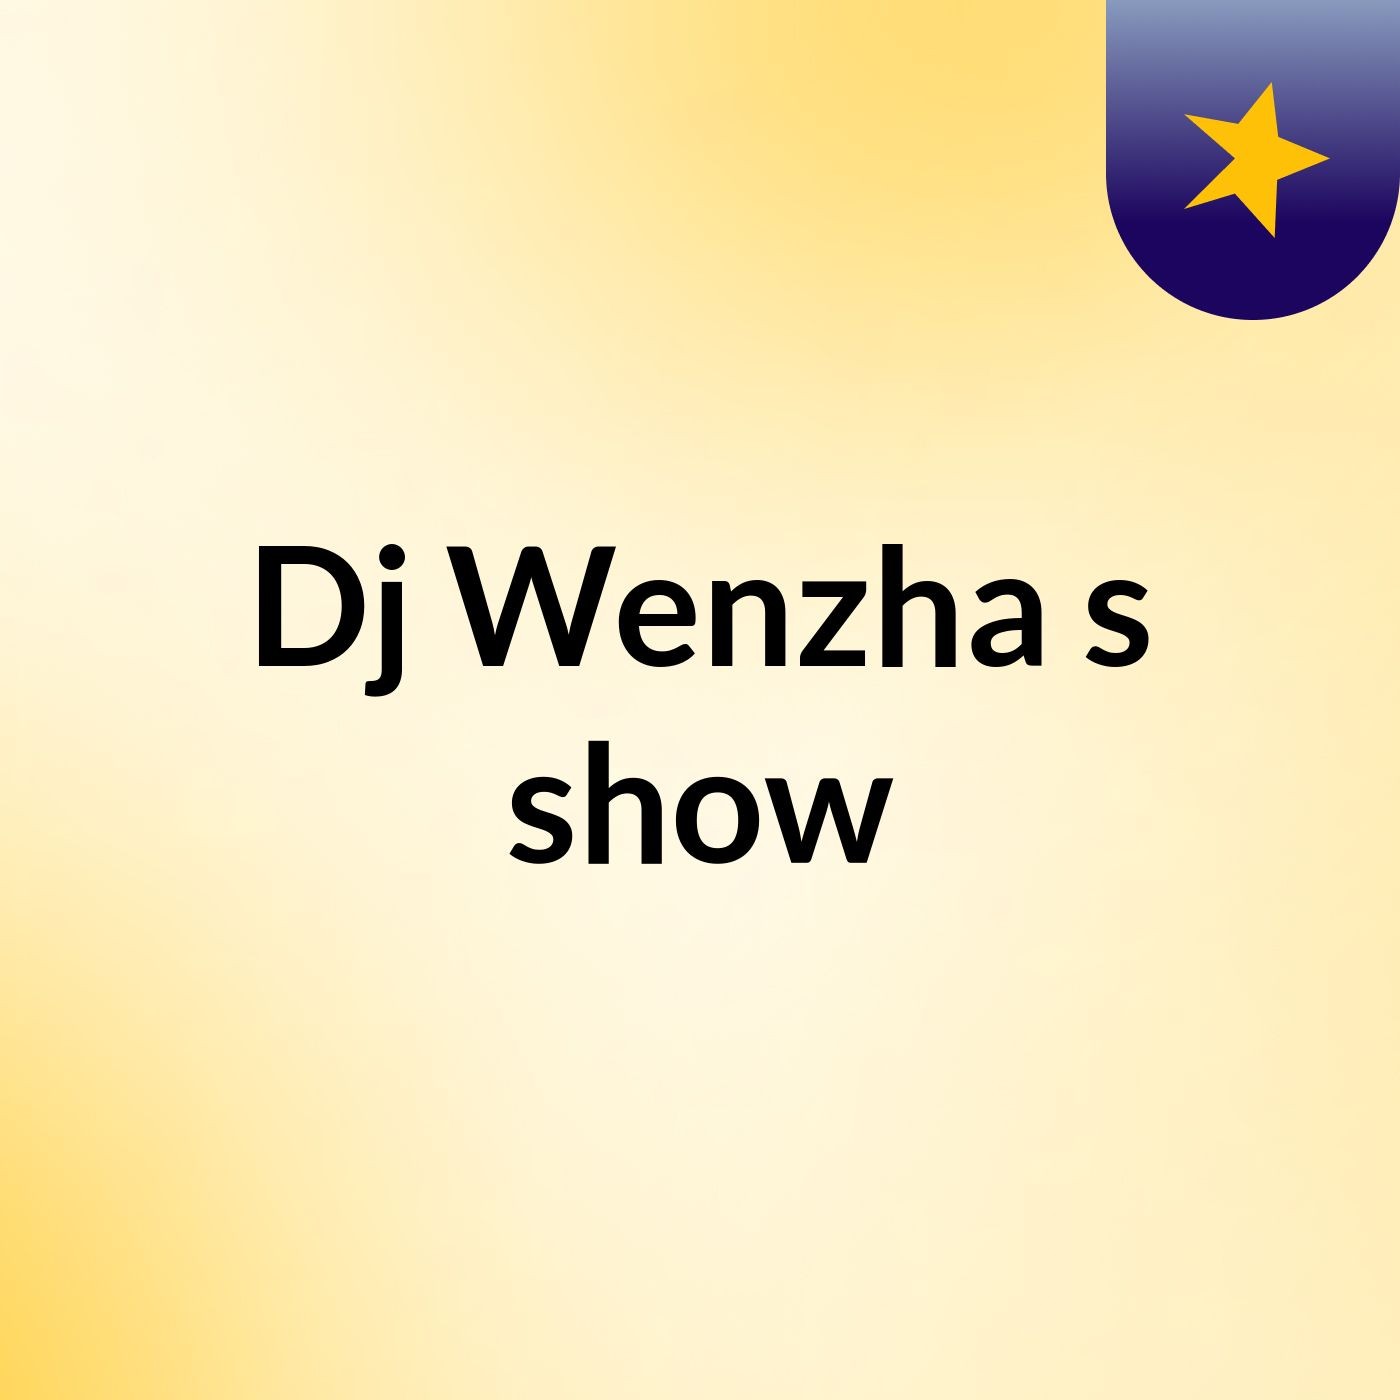 Dj Wenzha's show